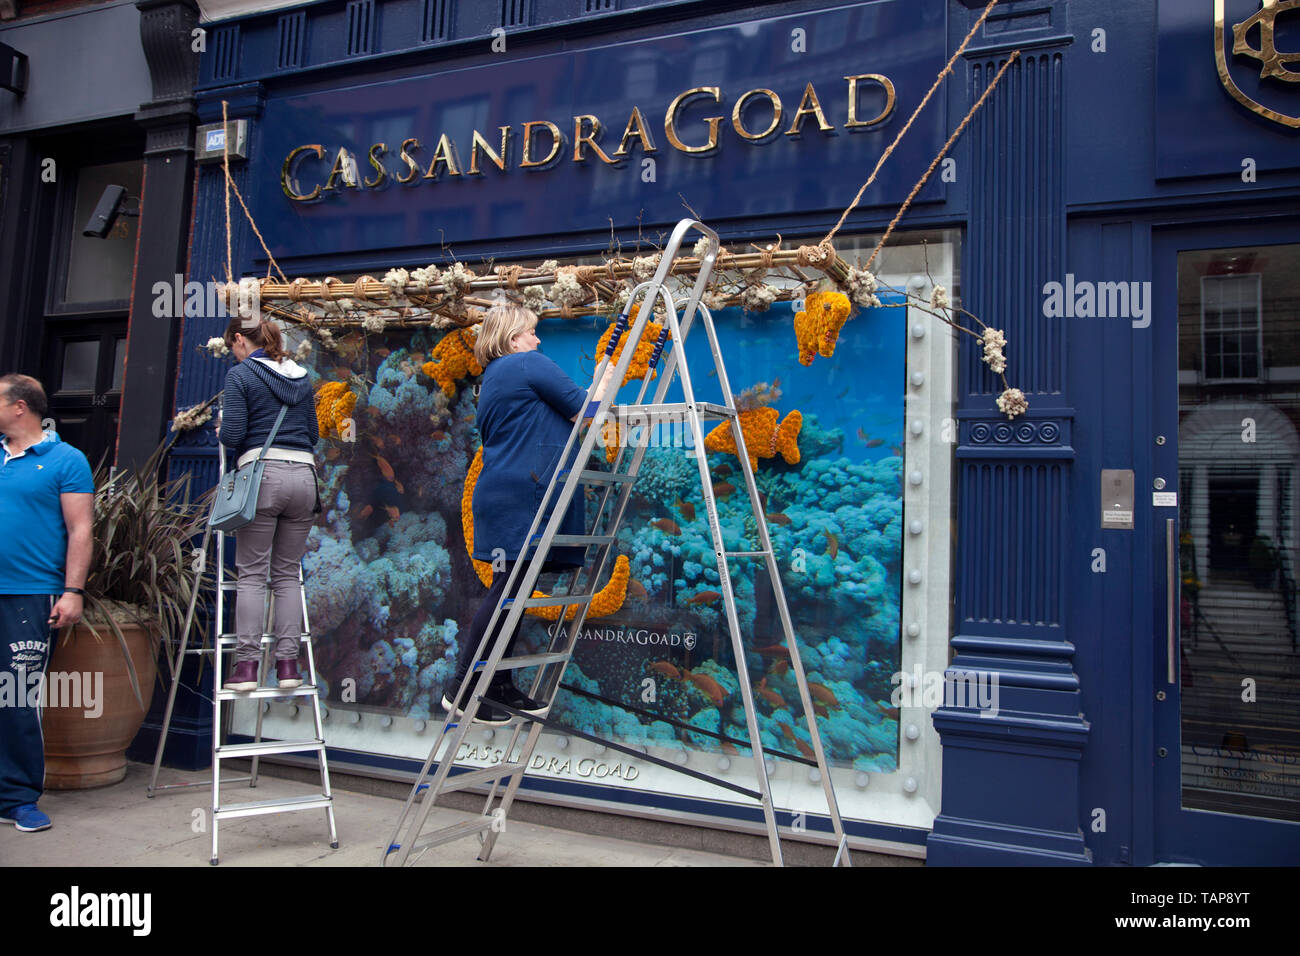 La préparation pour Cassandra Goad's affichage floral, Sloane Street, Chelsea, Londres SW3 Banque D'Images